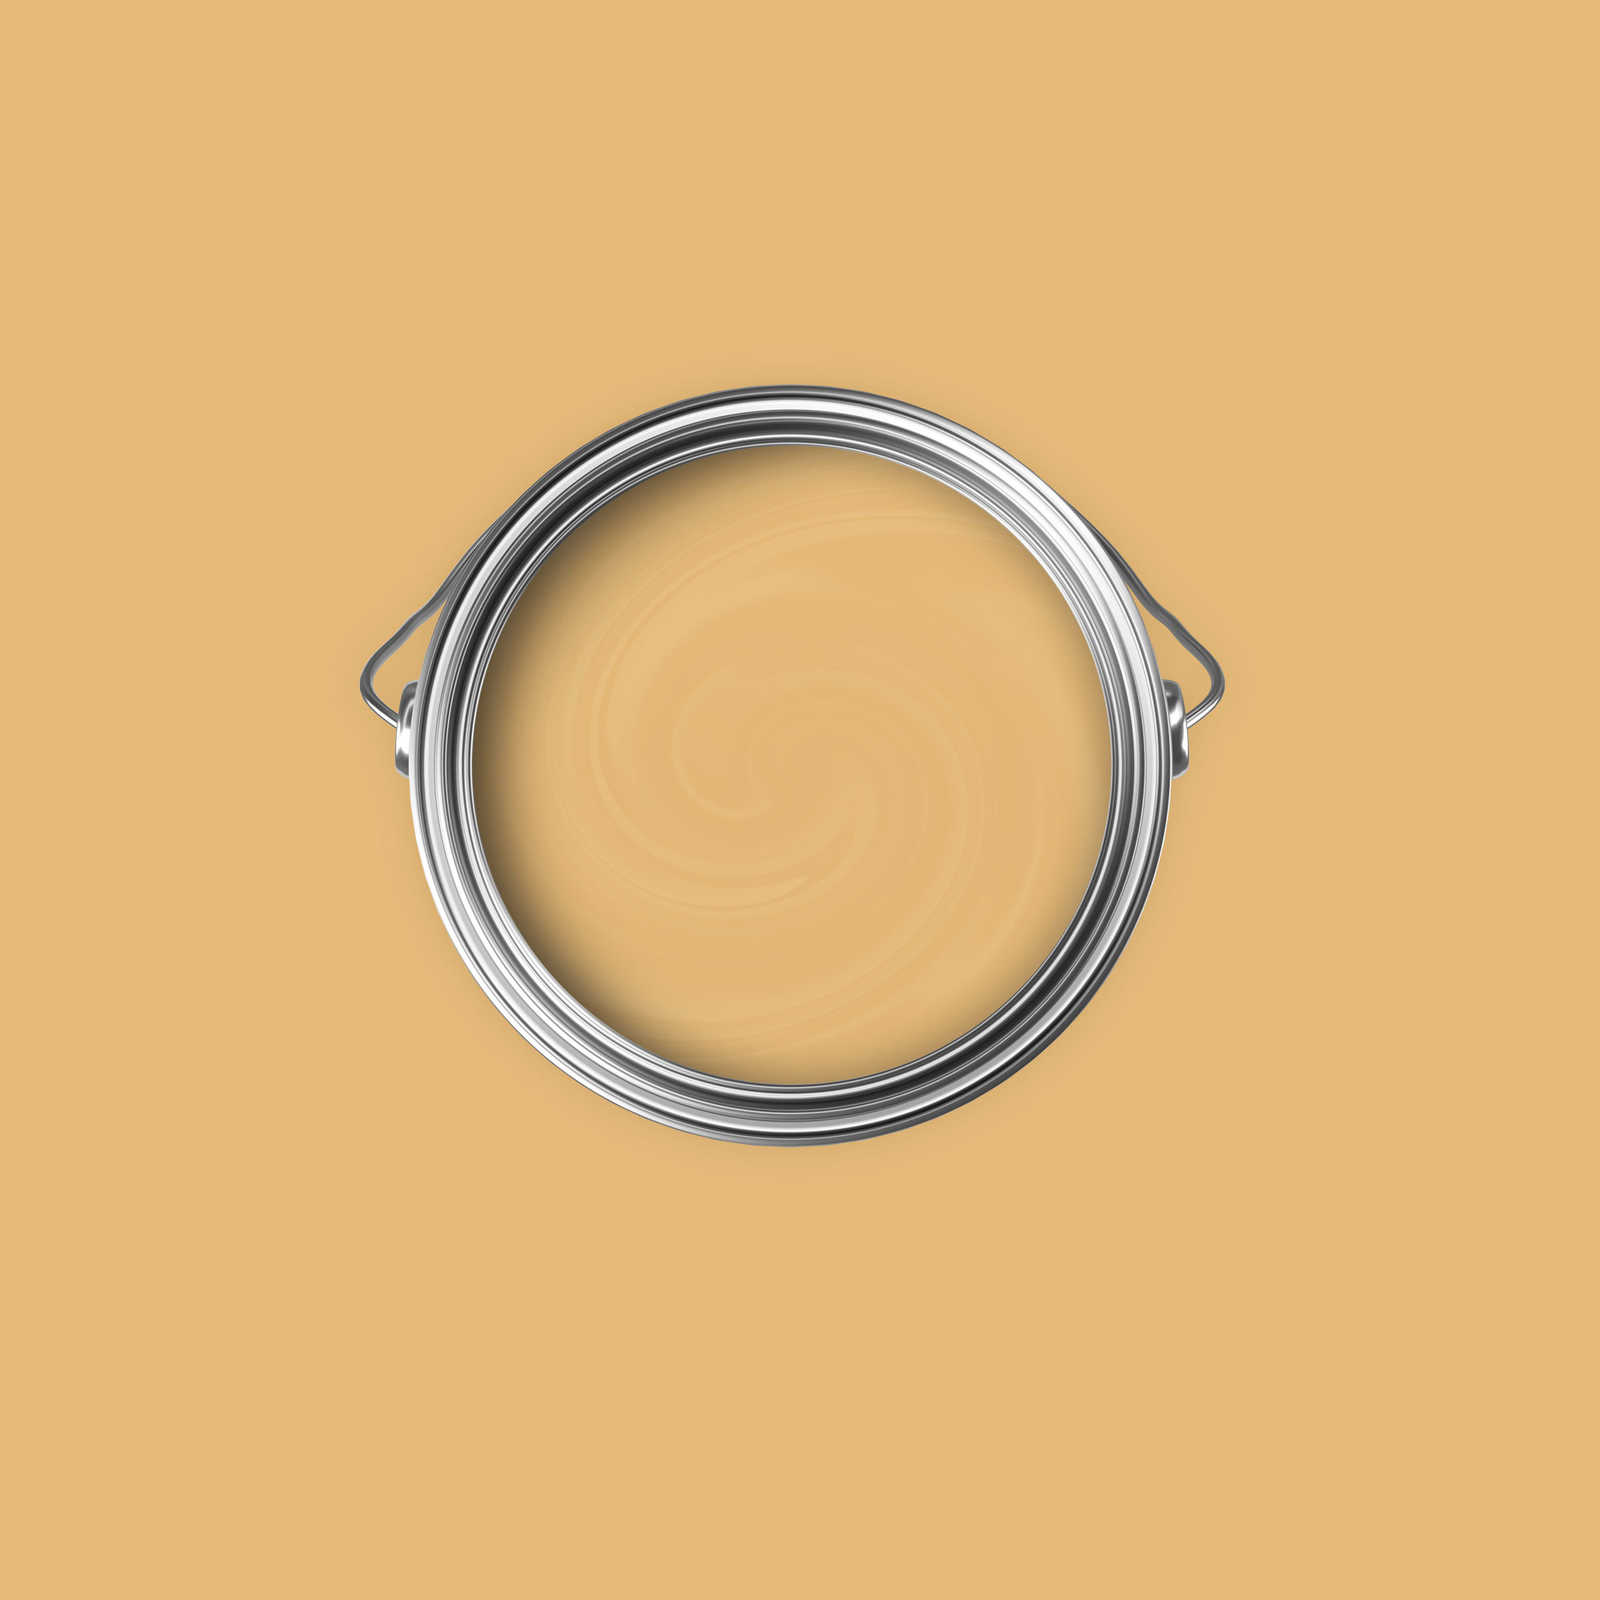             Premium Wandfarbe aufweckendes Senfgelb »Beige Orange/Sassy Saffron« NW811 – 2,5 Liter
        